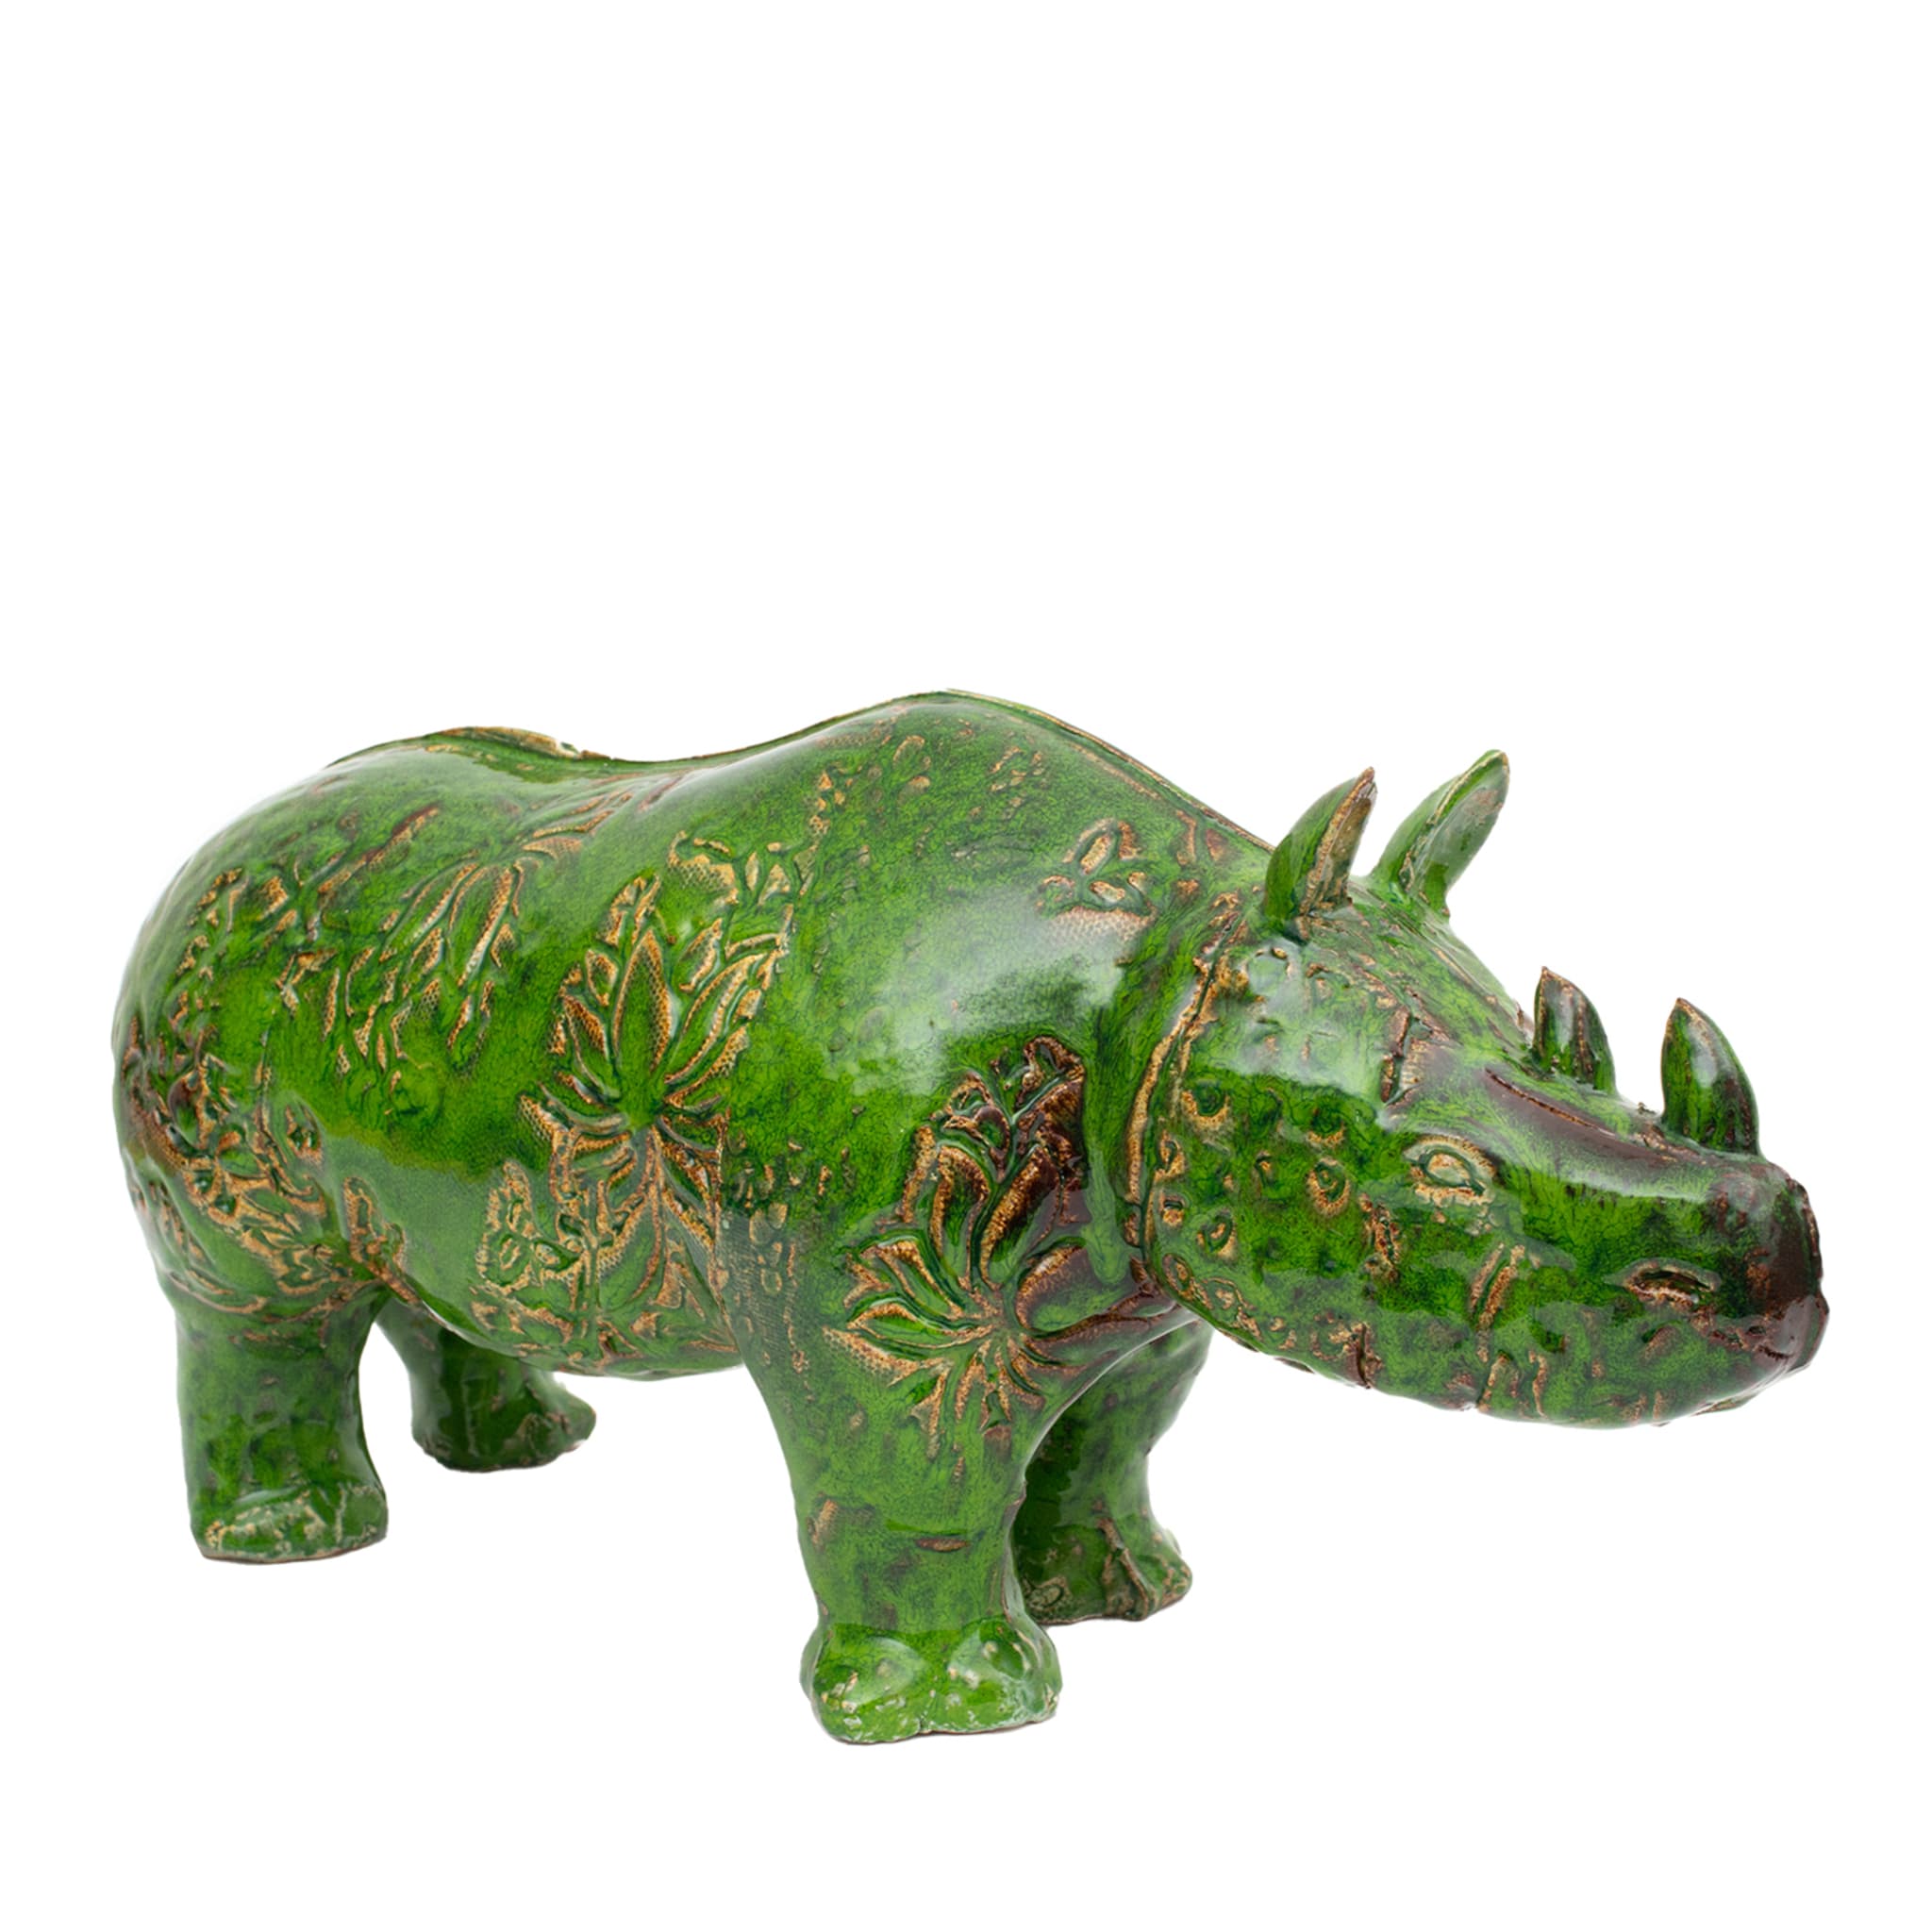 Escultura de rinoceronte nº 2 - Vista principal